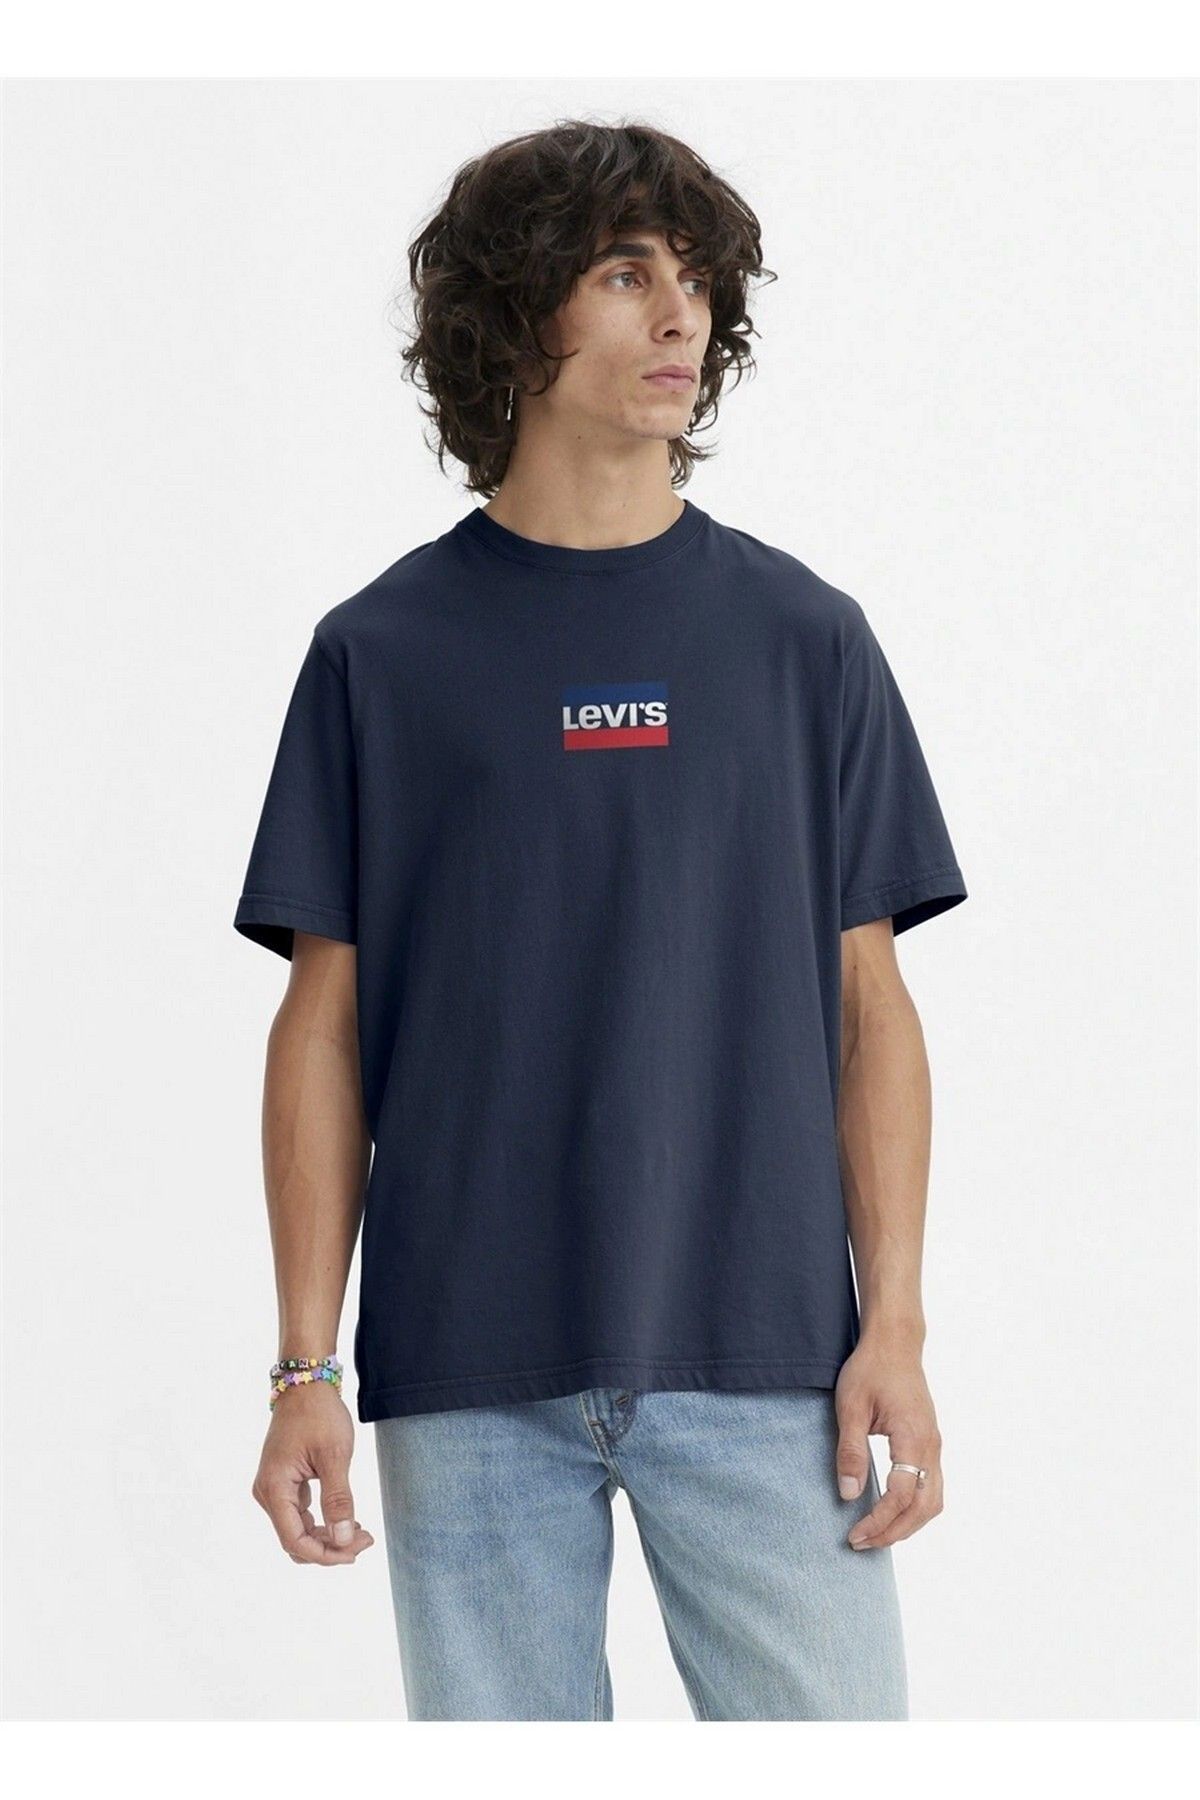 Levi's T-shirt Erkek T-shirt Lacivert Beden : L